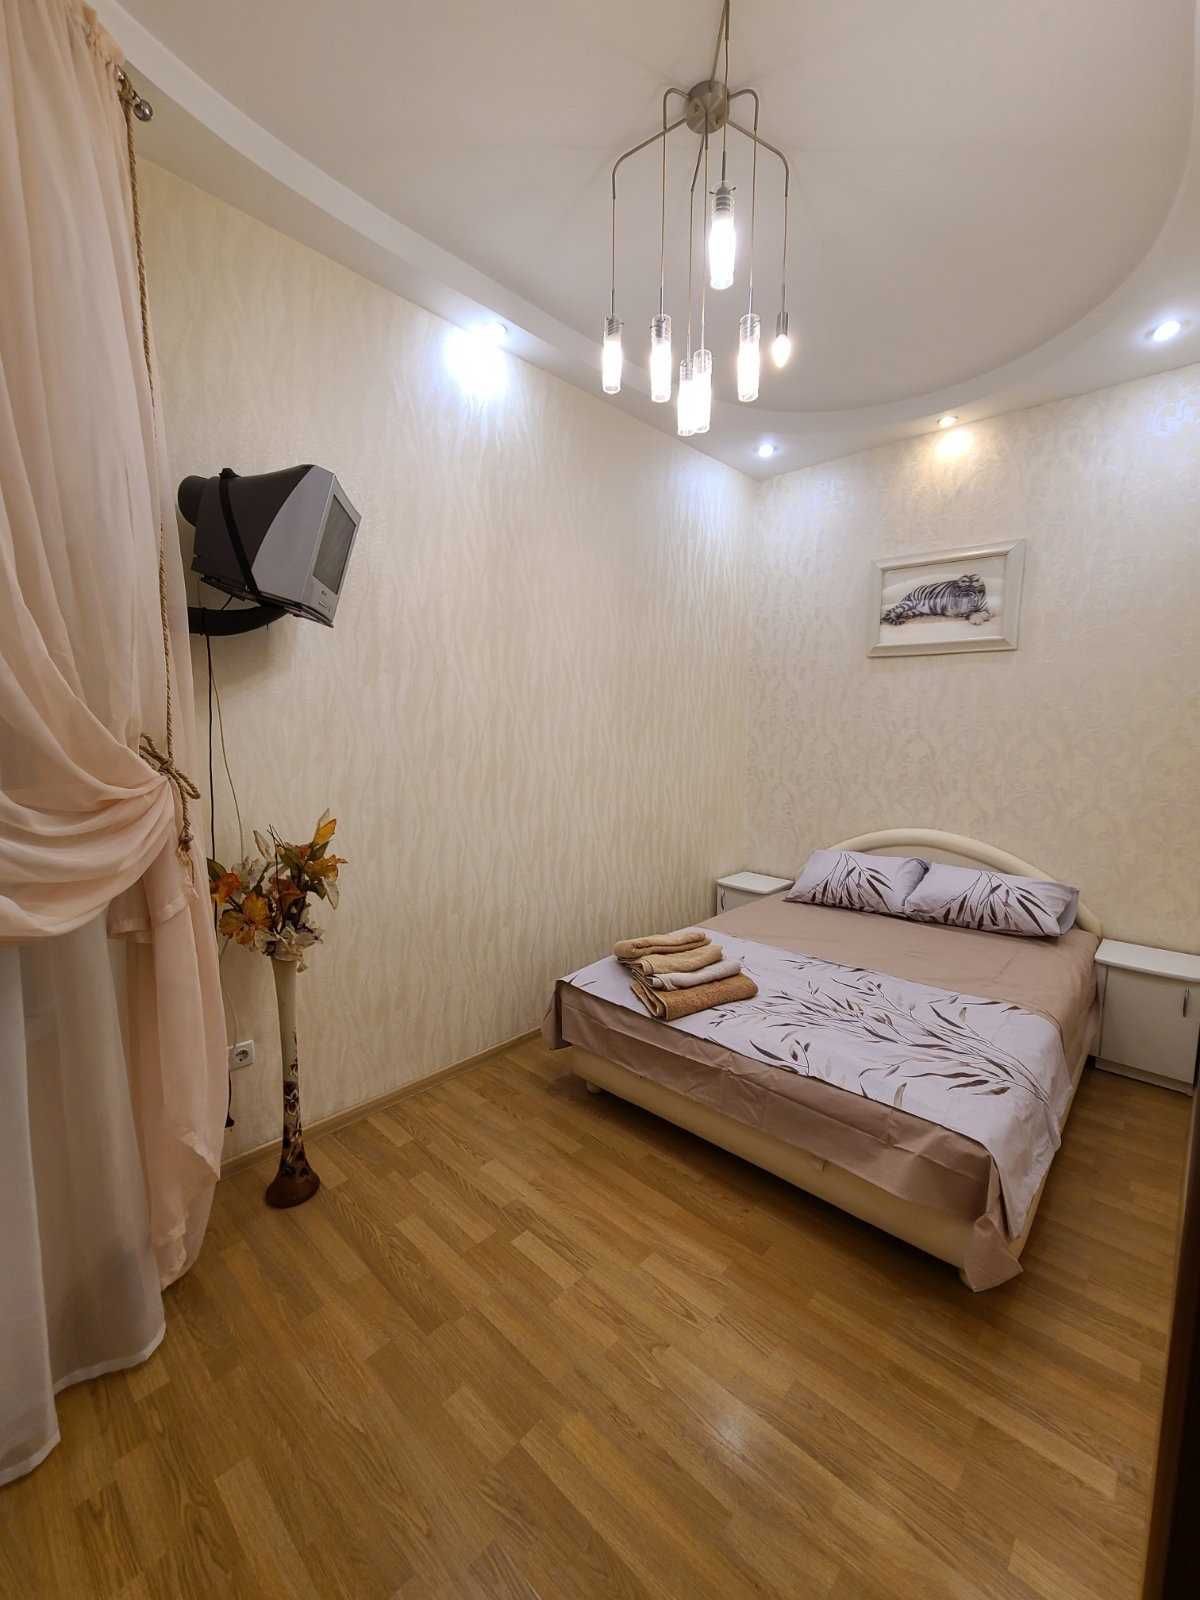 Продам двух-комнатную квартиру по ул. Екатериненской/Дерибасовская